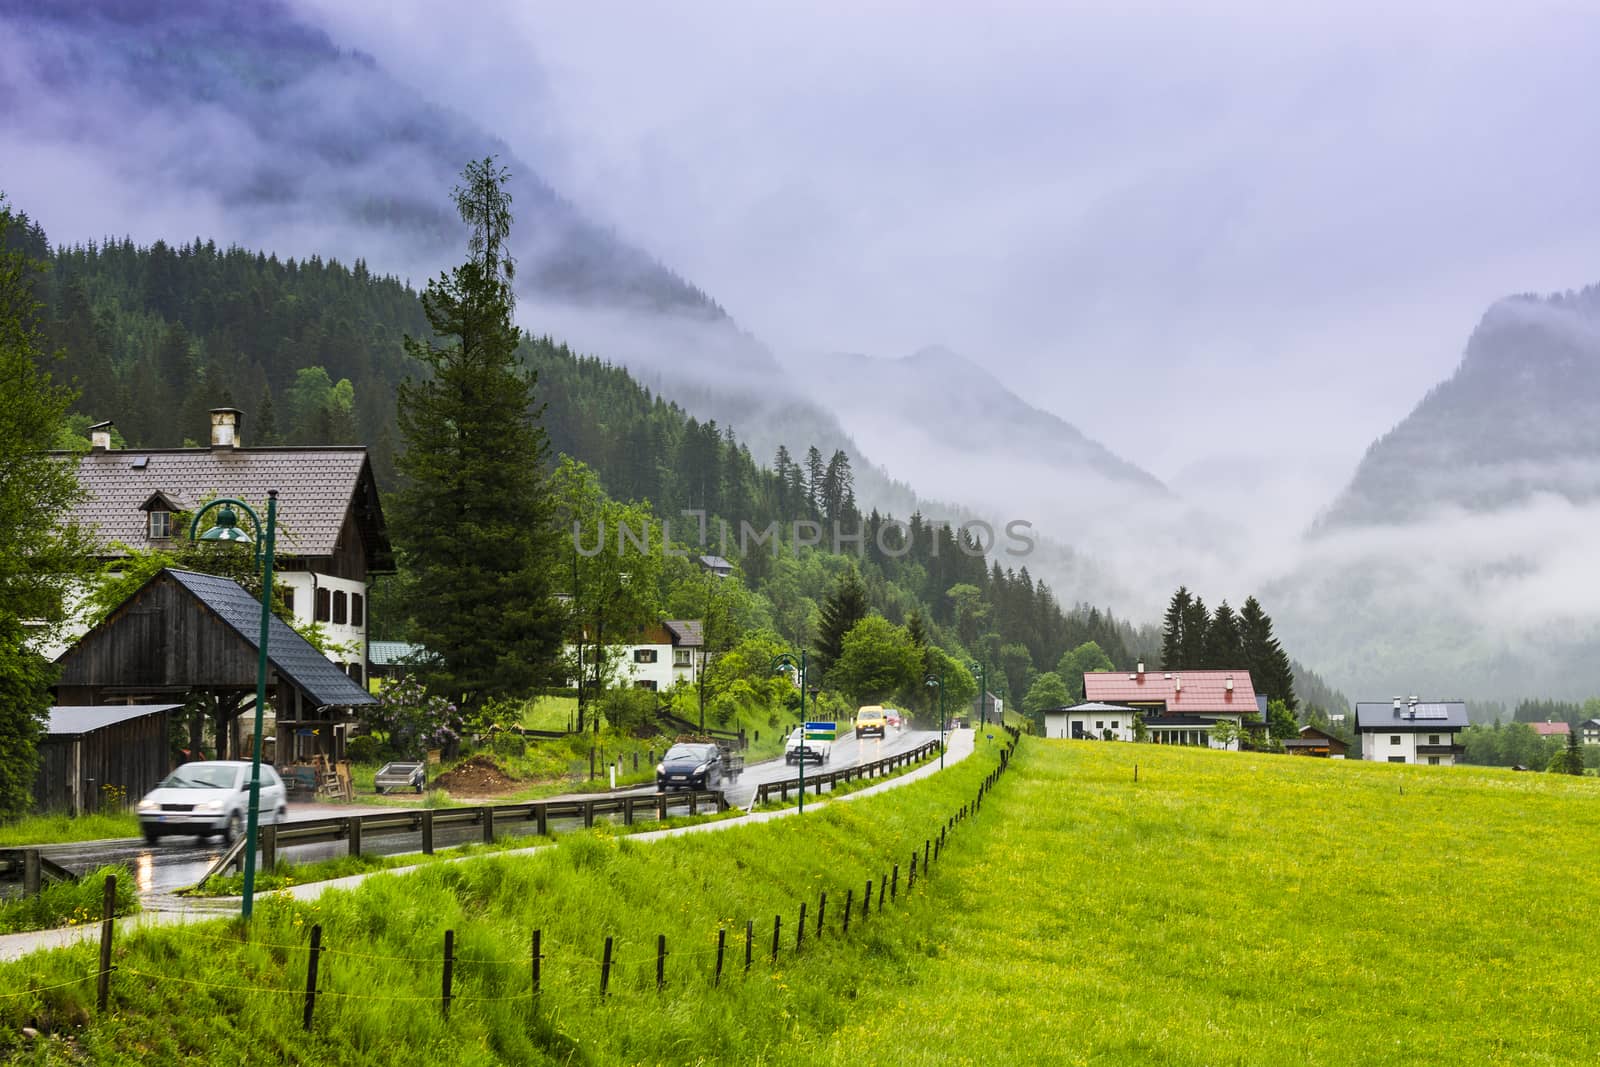 Rain in rural Austria by gkuna